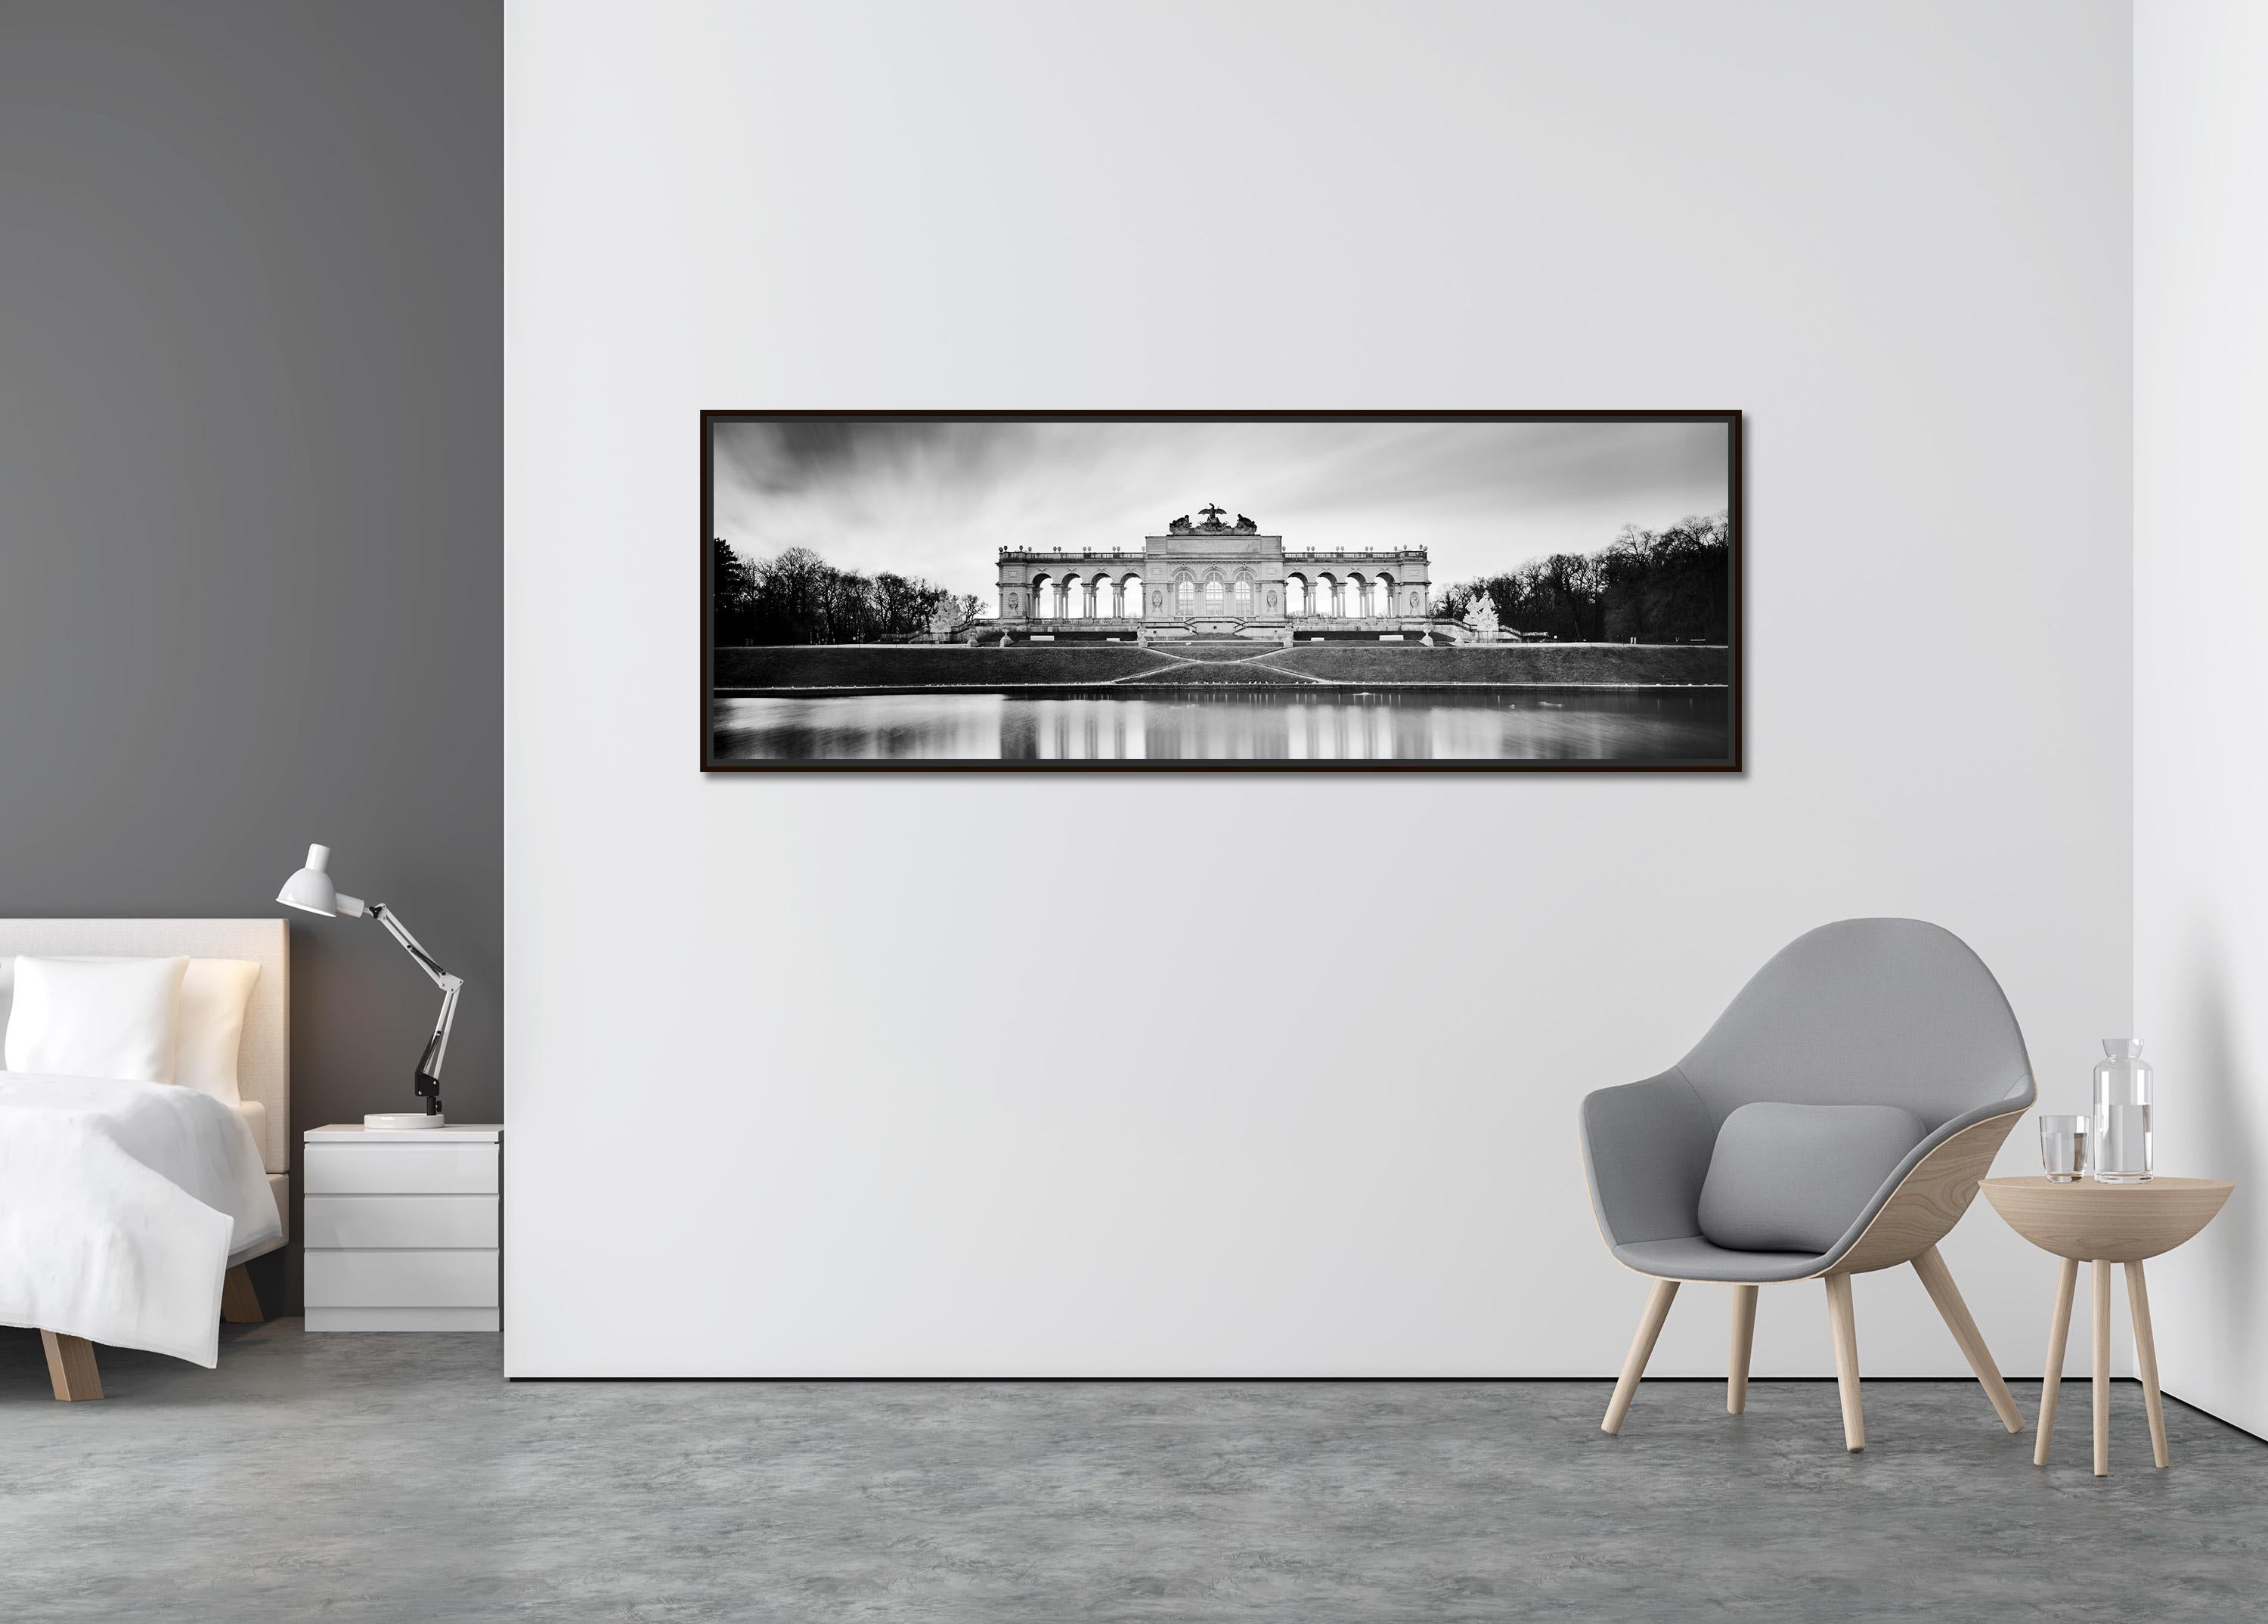 Gloriette Panorama, Schloss Schoenbrunn, Vienna, black and white art photography - Contemporary Photograph by Gerald Berghammer